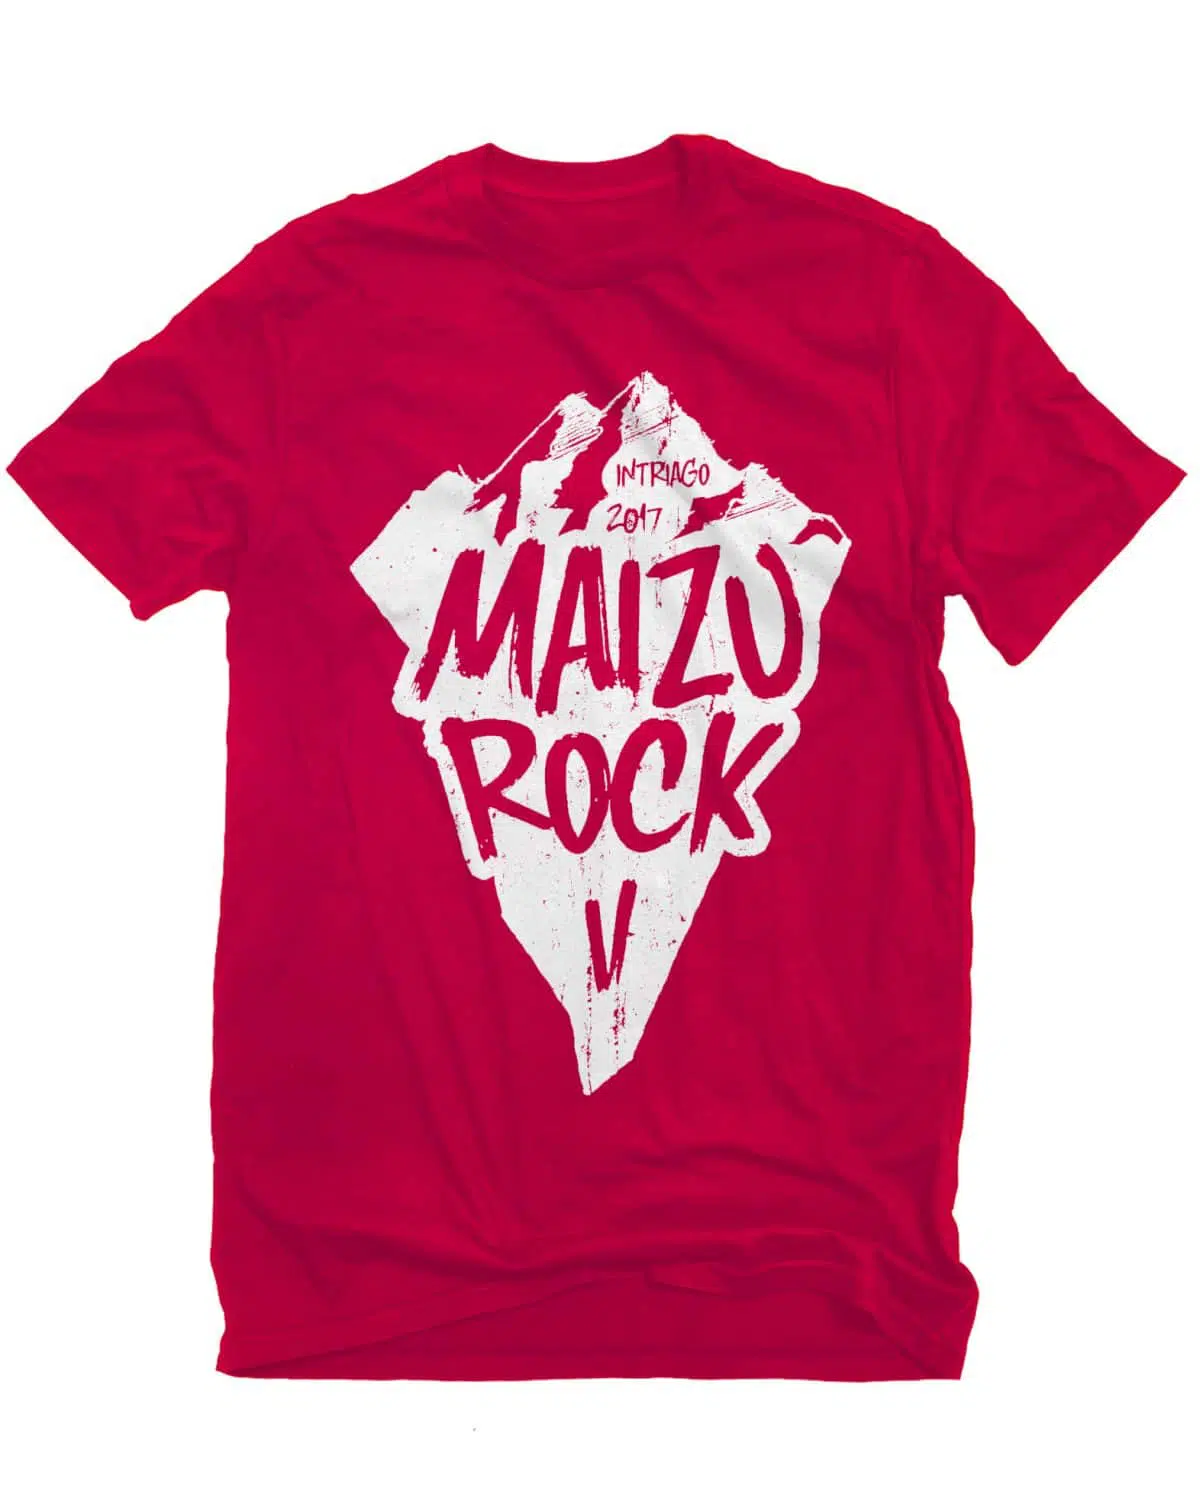 Camiseta Maizu2017 e1582024561220